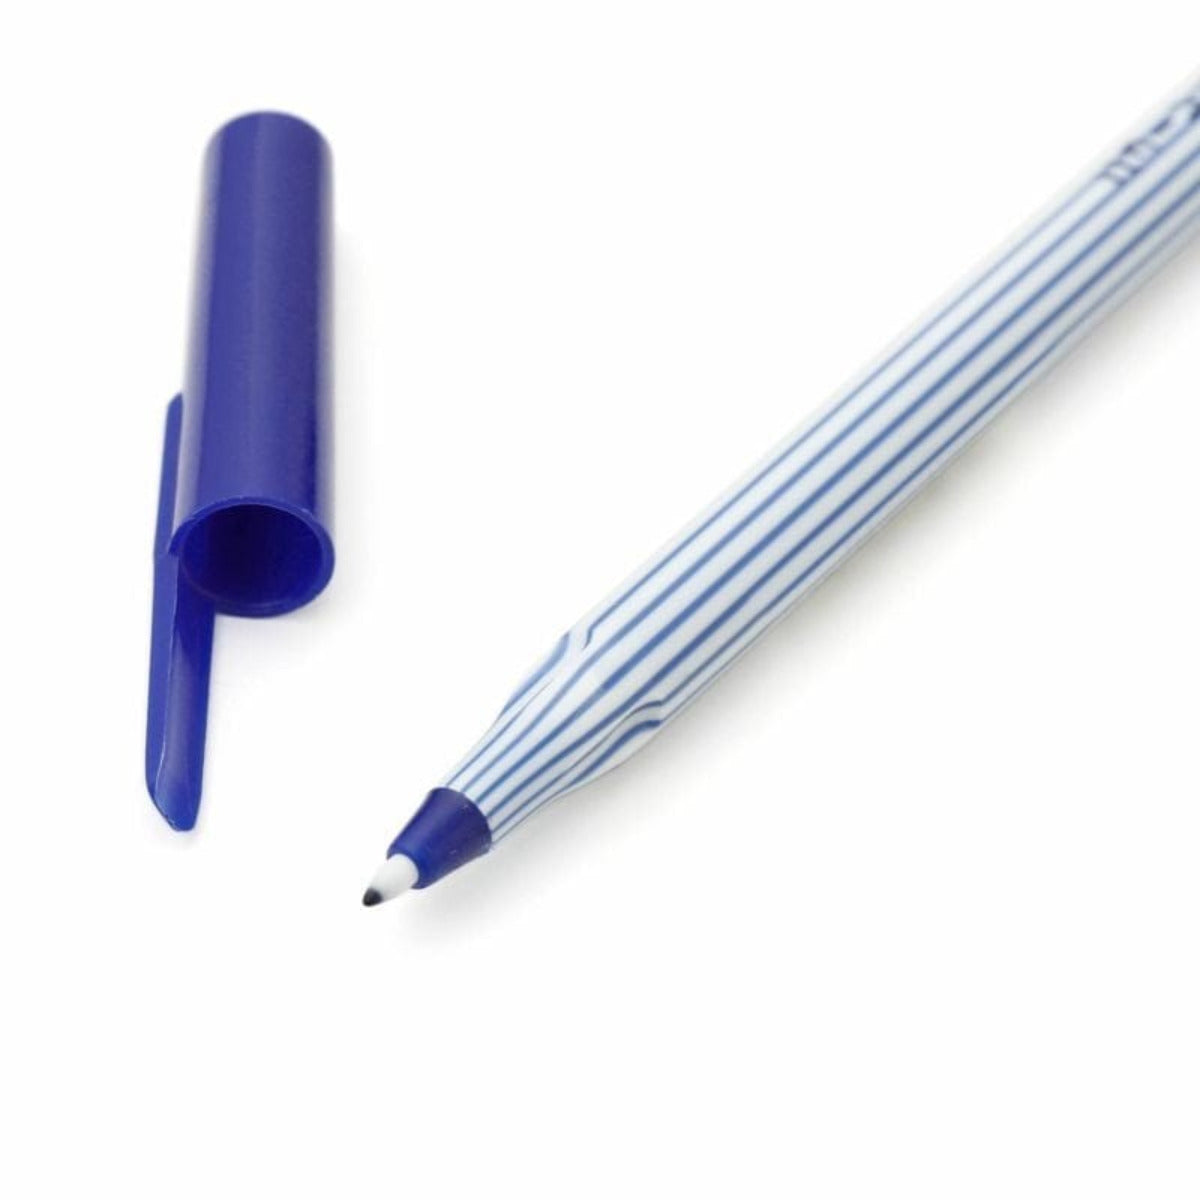 Hightide - Good Children's Color Pen Set of 5 - Statonary & Office - DANSKmadeforrooms